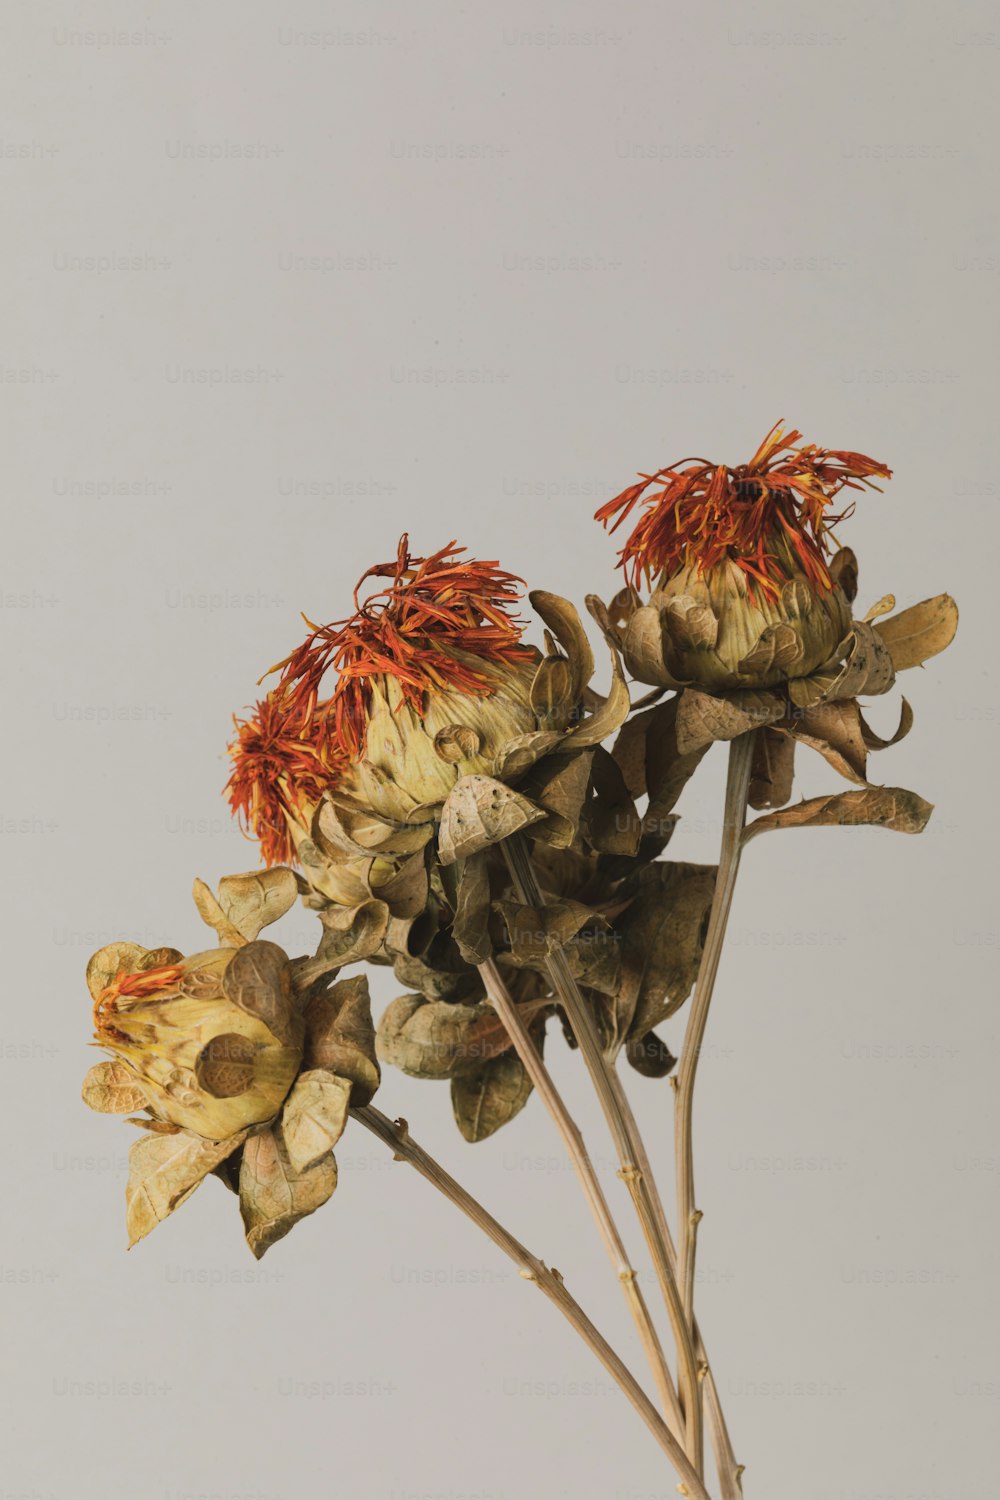 Eine Nahaufnahme eines Straußes toter Blumen